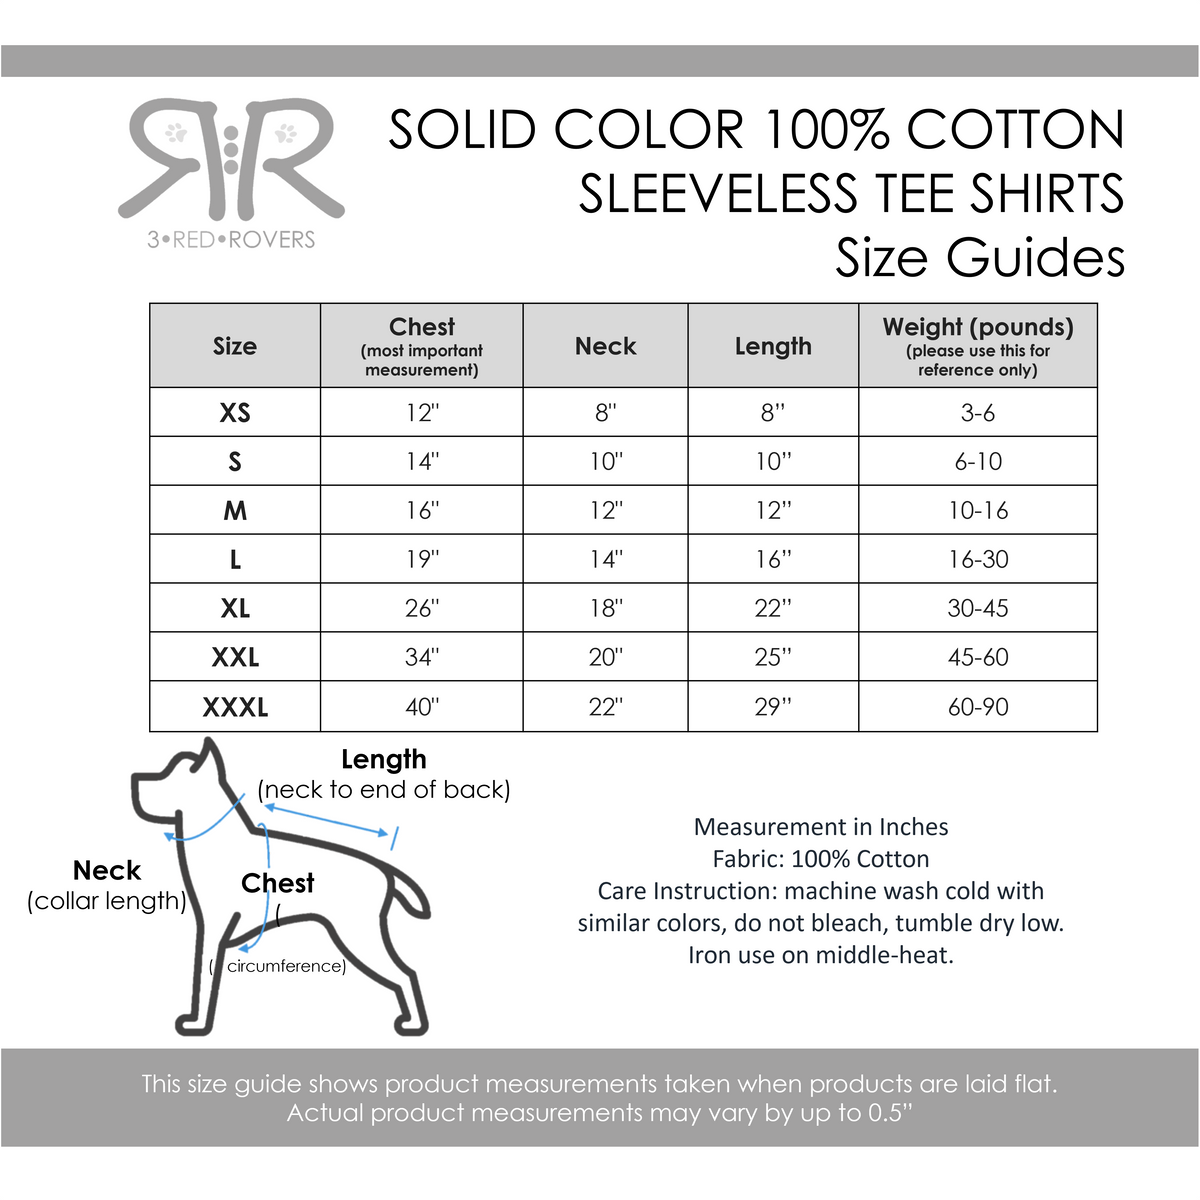 Teal All-Cotton Sleeveless Pet Shirt